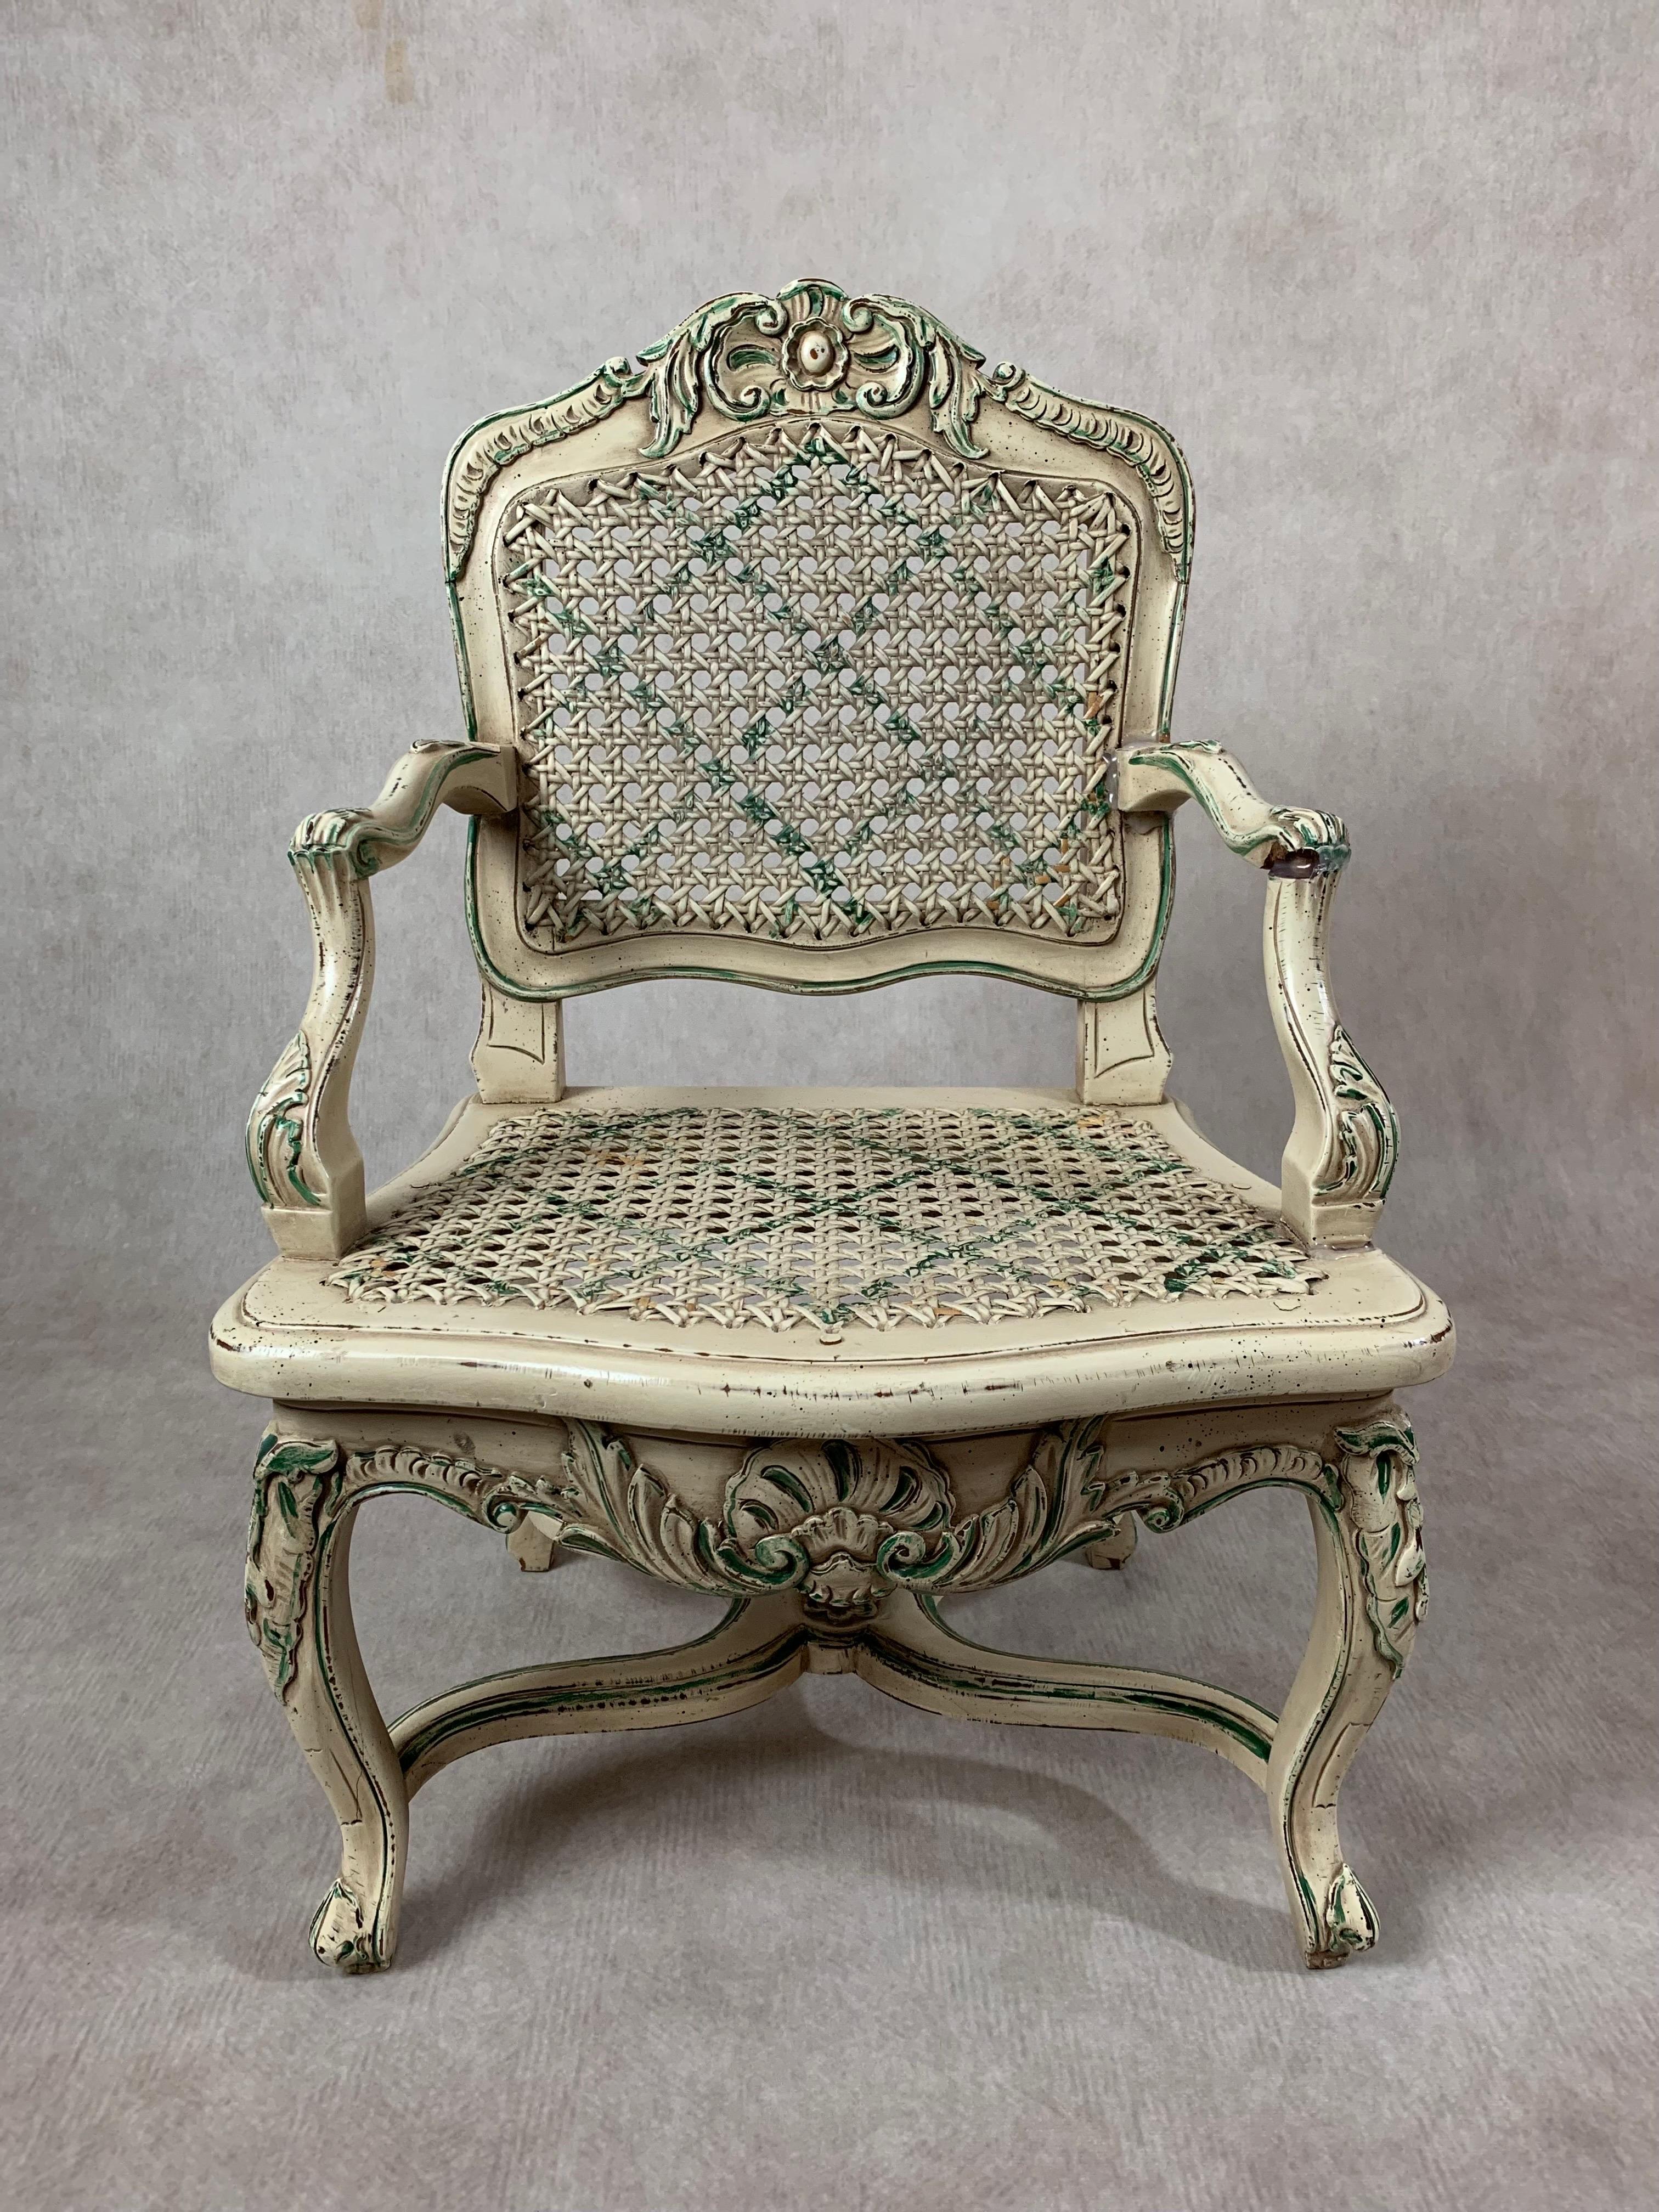 Une paire de chaises miniatures à accoudoirs de style Louis XVI, avec un décor de volutes sculptées et moulées avec des détails peints à la main, des pieds en cabriole, un dossier et une assise à accoudoirs. L'une des chaises présente des accents